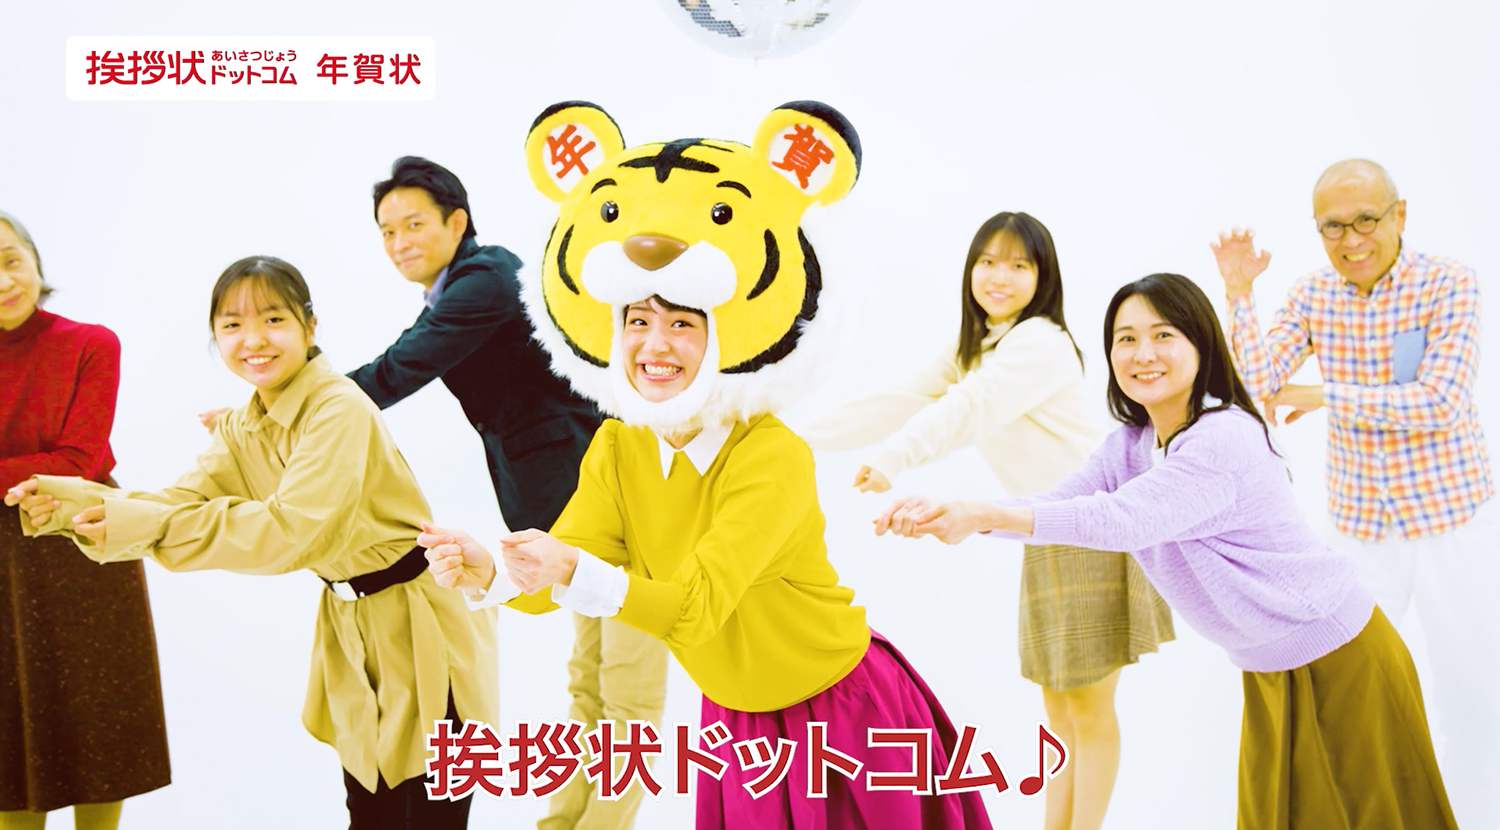 トラのかぶりものを被って田崎礼奈が歌って踊る♪ の写真 | CMNOW | 玄光社